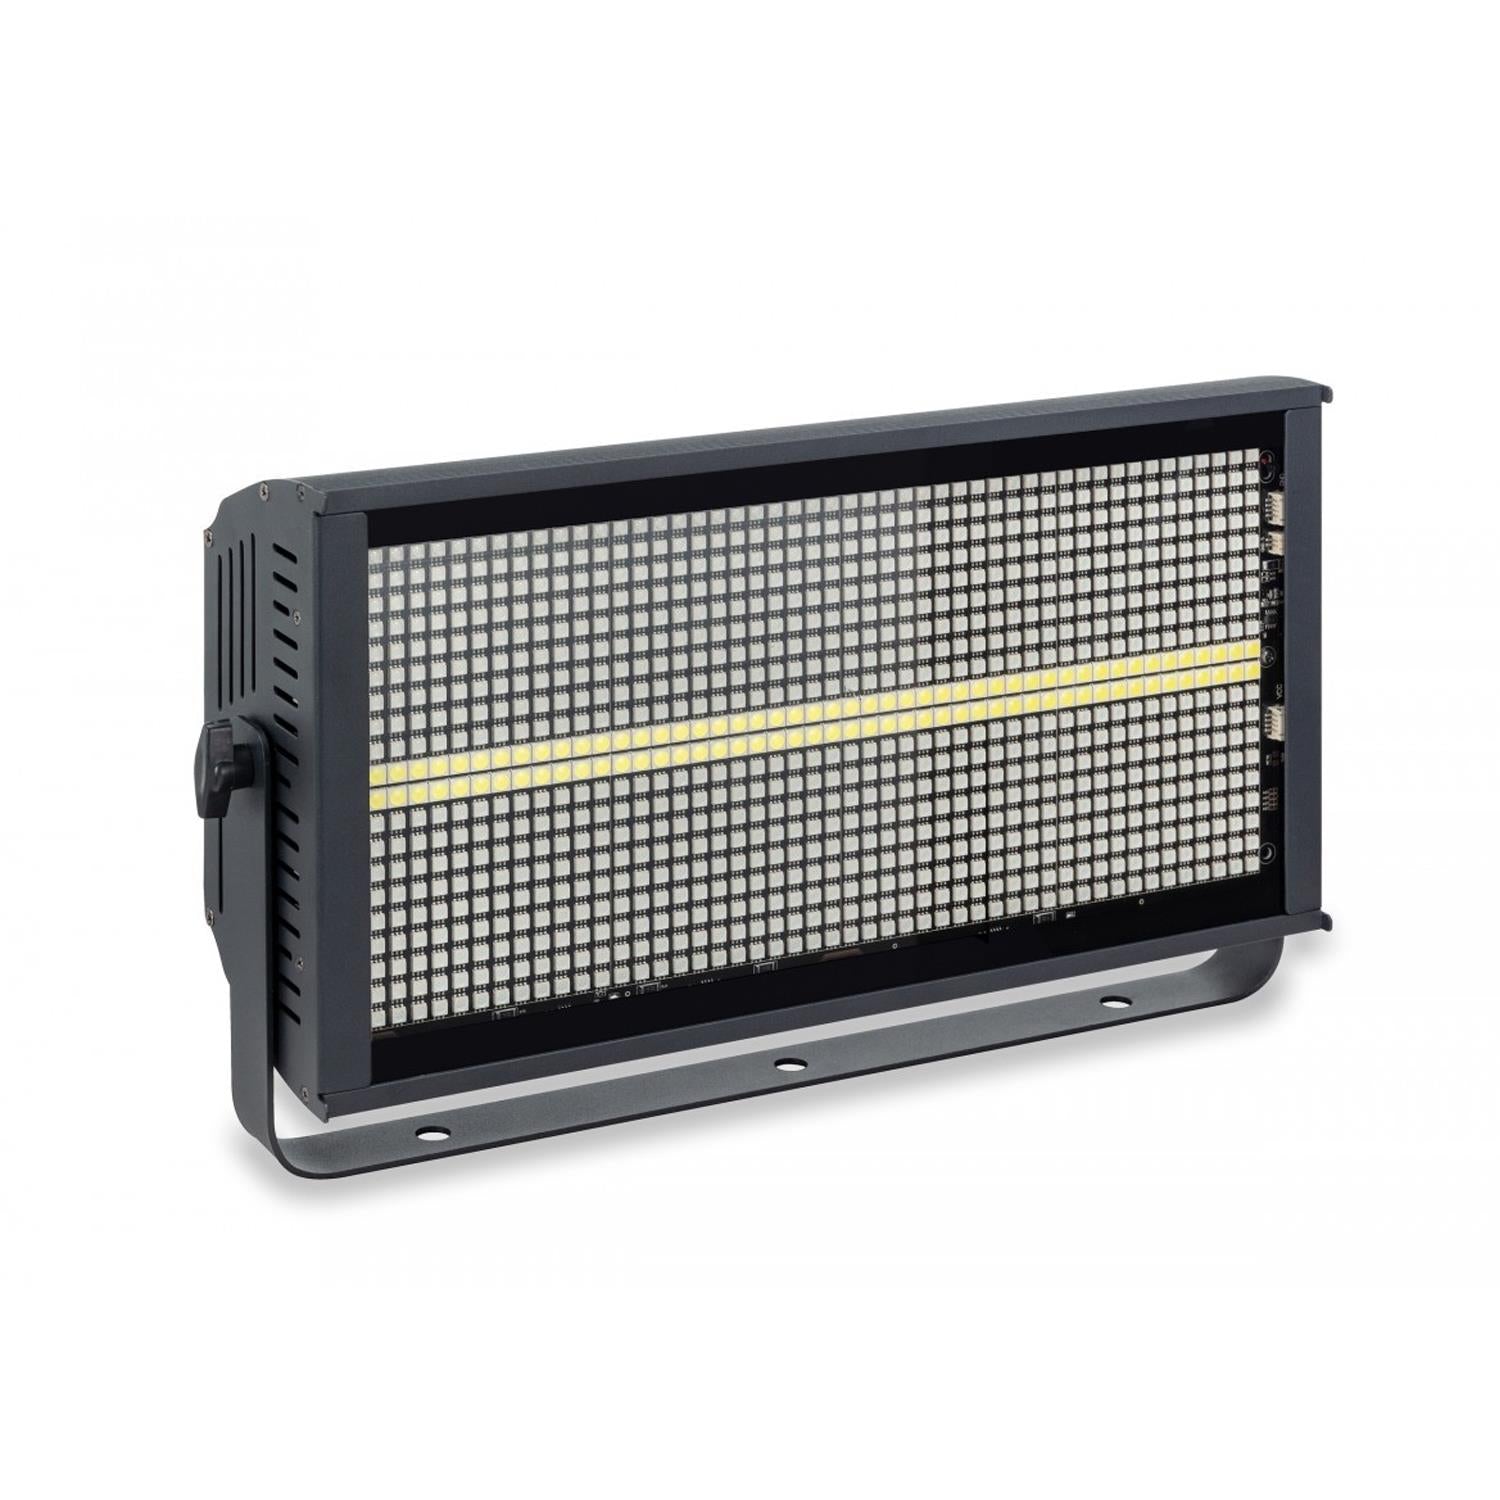 Centolight Lightblaster S960 Wash and Strobe LED Panel